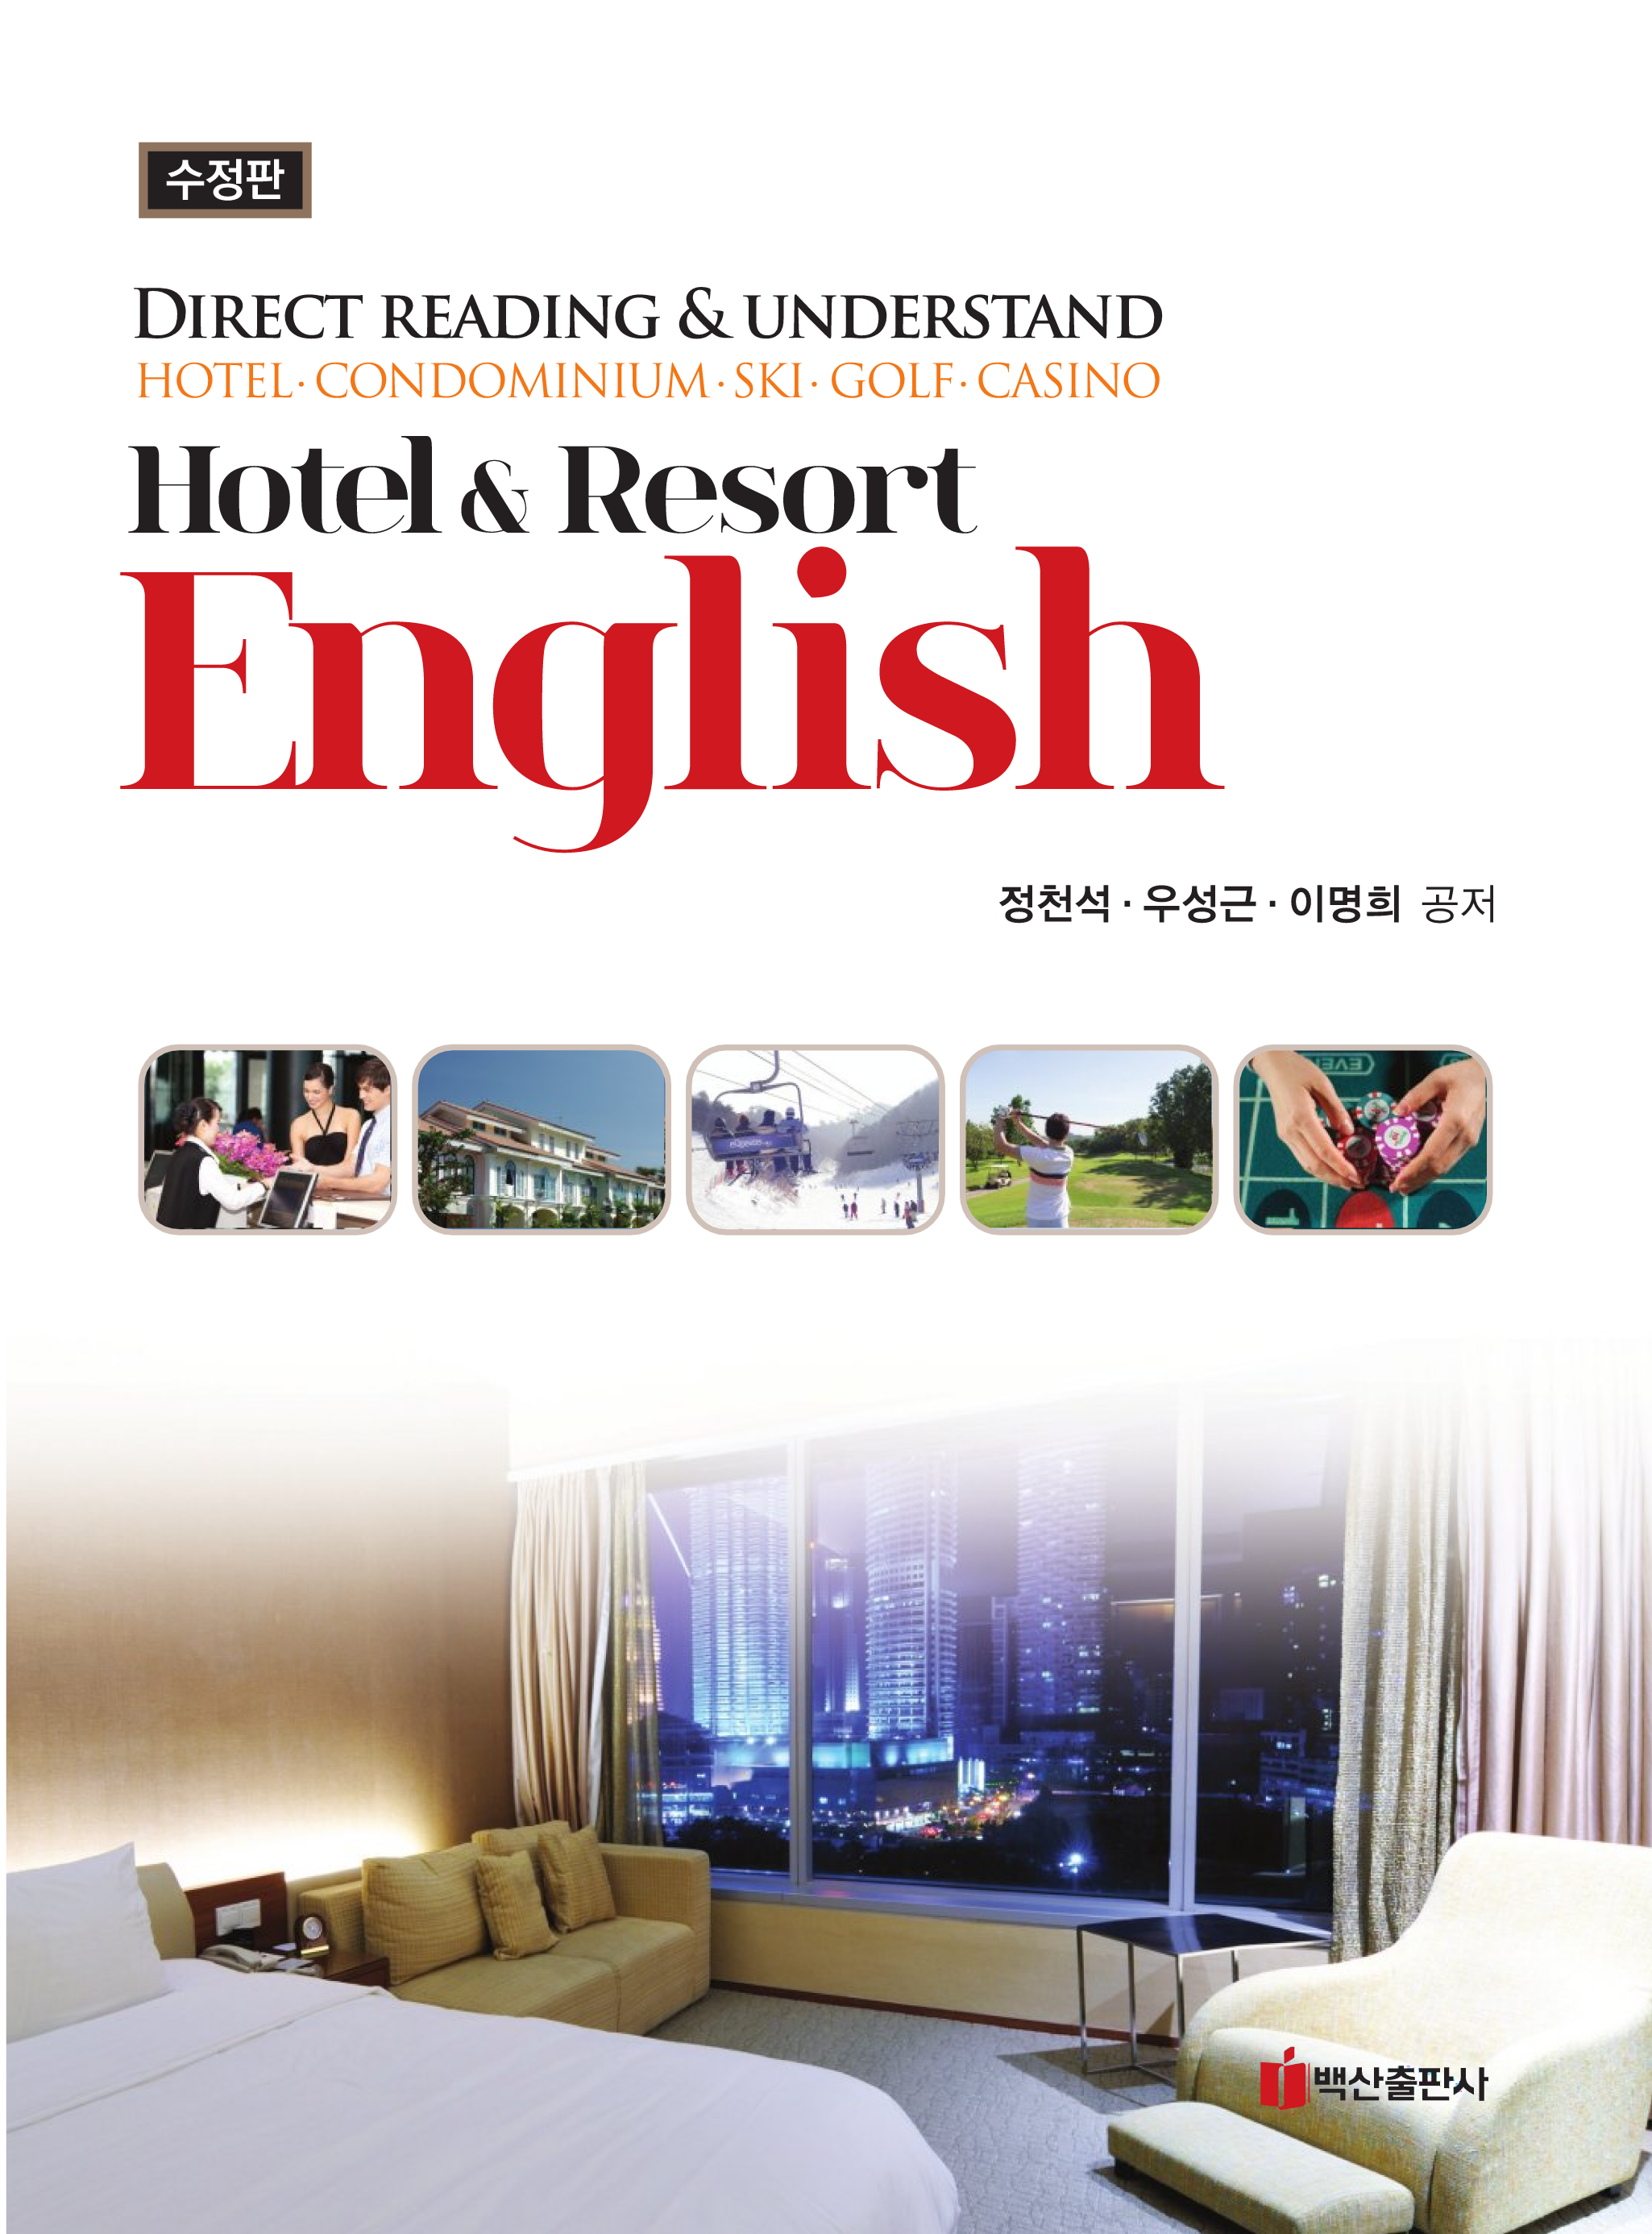 Hotel & Resort English